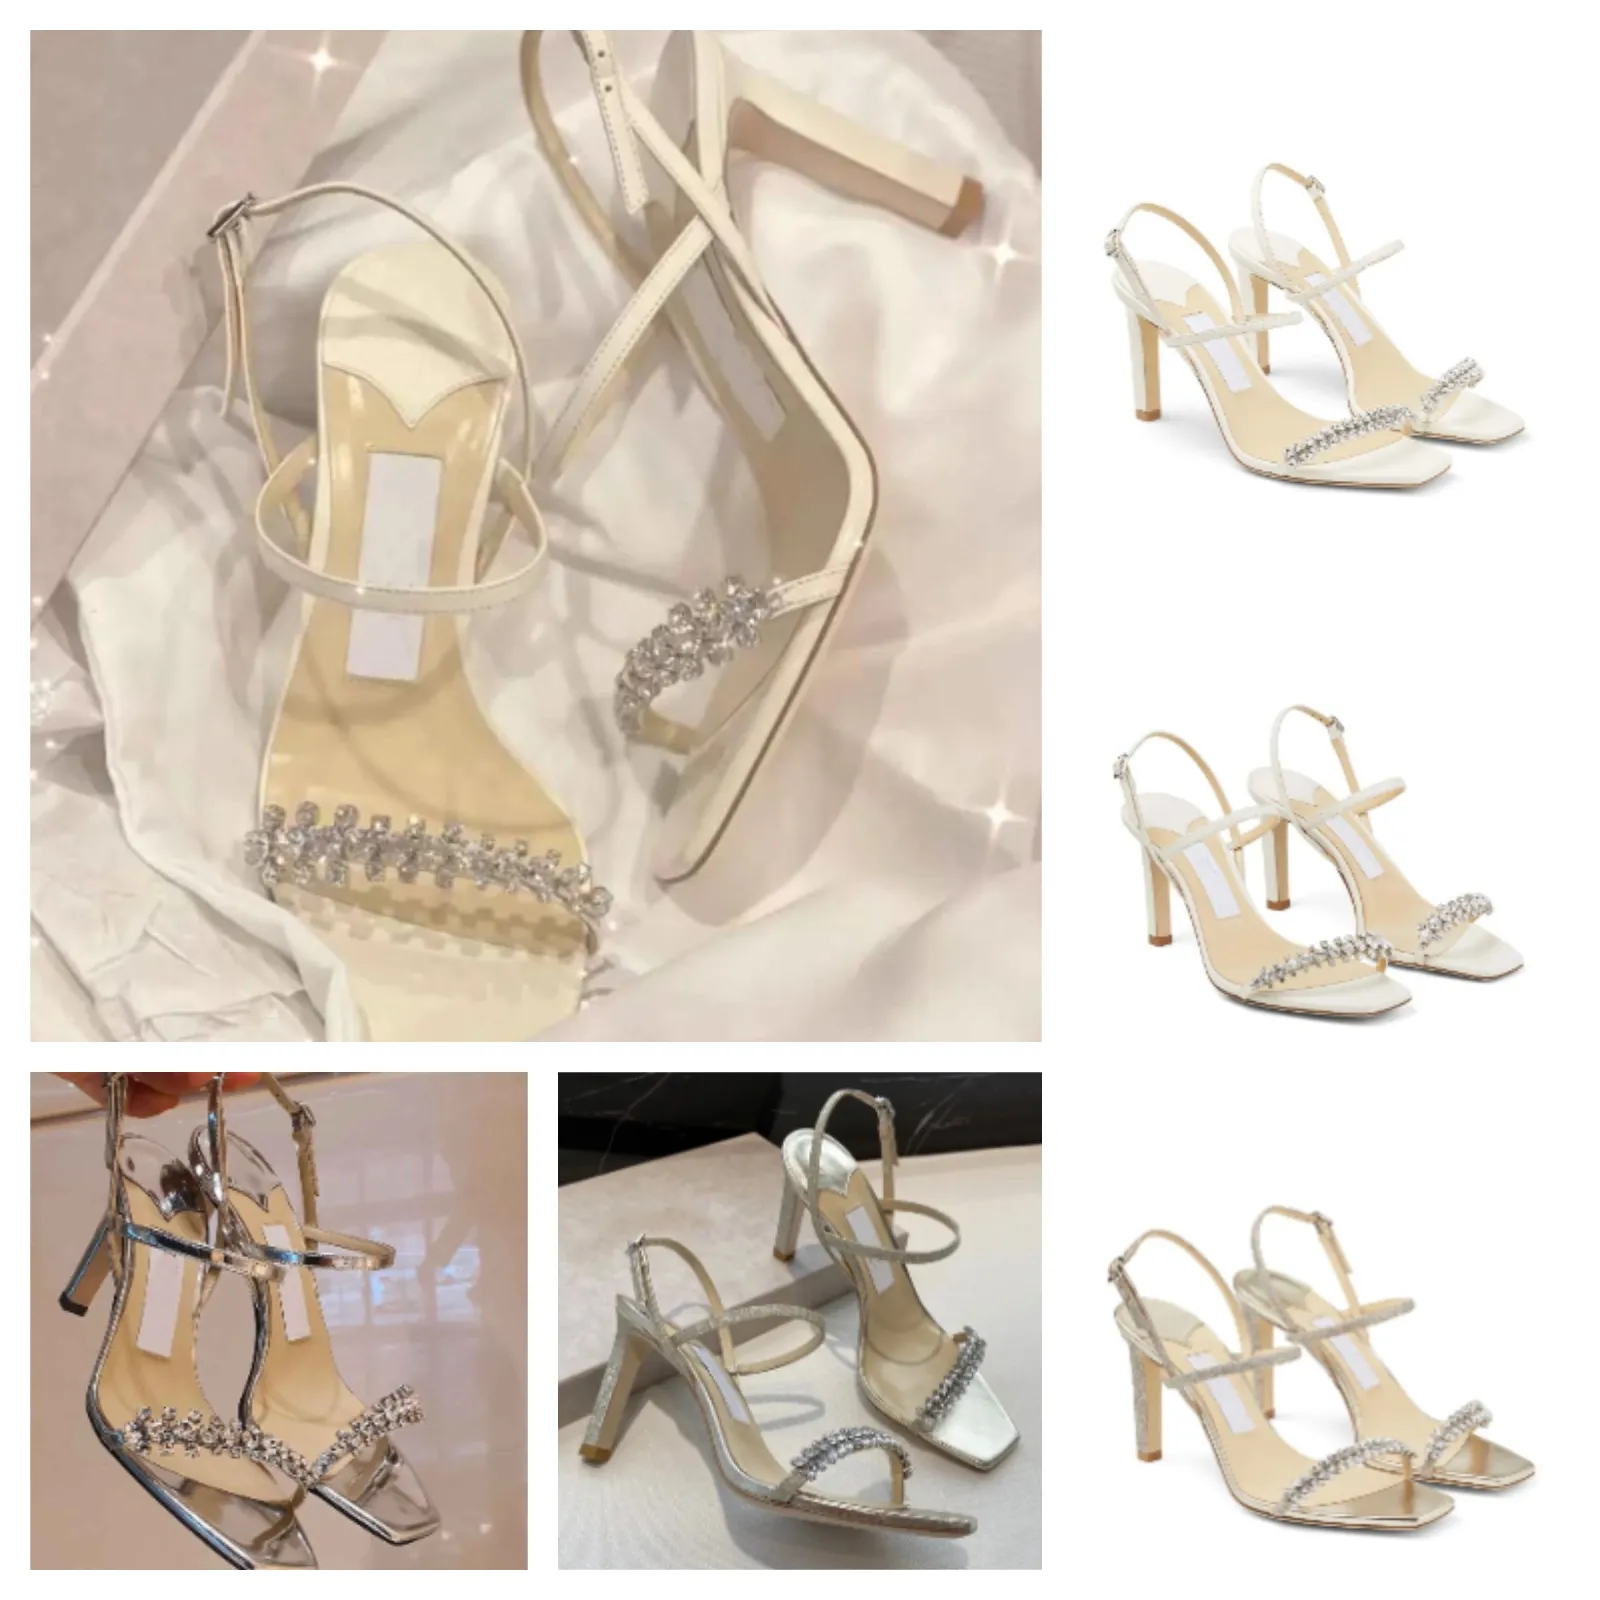 Verão 2023 Marca Meira Sandálias Sapatos Branco Cristal Enfeitado Strappy Pumps Feminino Salto Agulha Vestido de Noite Noiva Vestido de Noiva Sandalias Sapato EU35-43.BOX